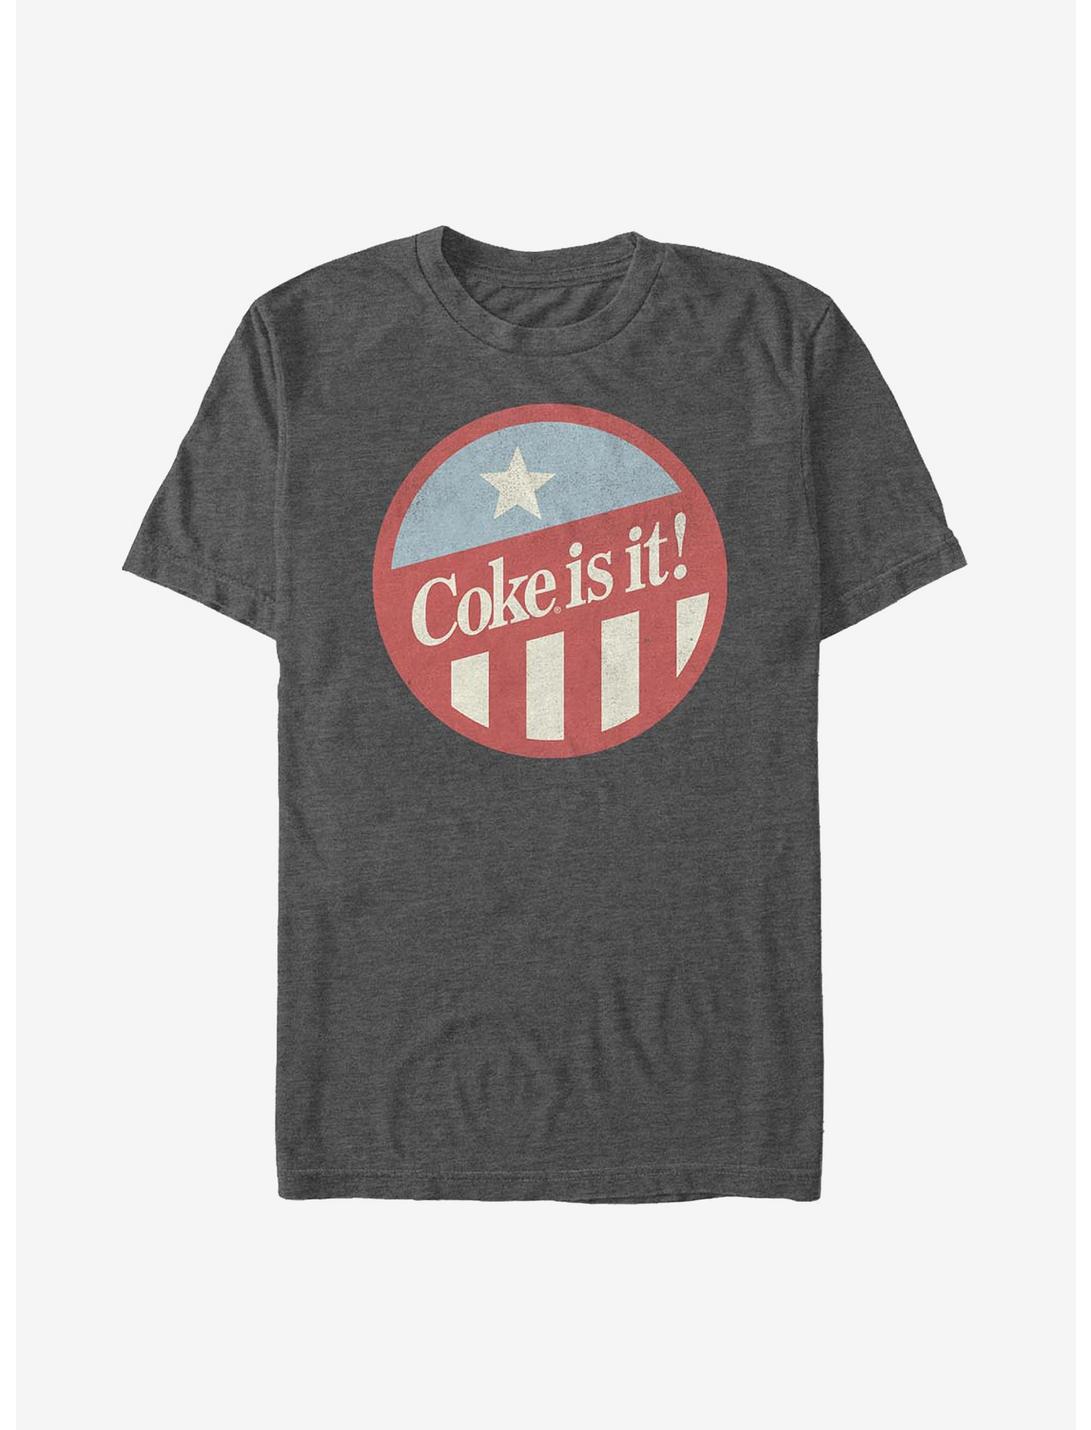 Coca-Cola Coke Is It! T-Shirt, CHAR HTR, hi-res